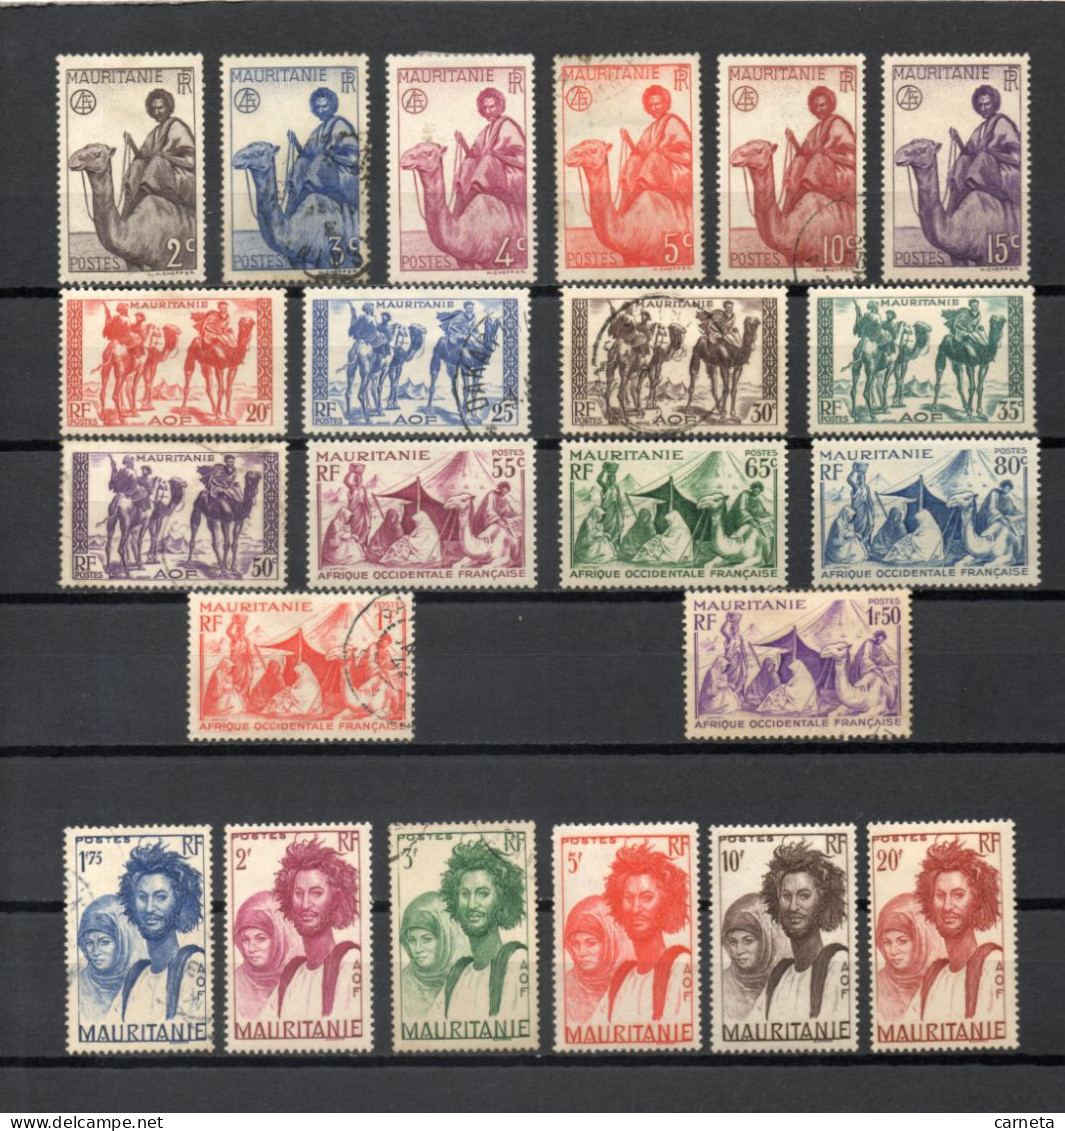 MAURITANIE  N° 73 à 94   OBLITERES + NEUFS AVEC CHARNIERES    COTE 22.00€   NOMADES BEDOUINS   VOIR DESCRIPTION - Used Stamps